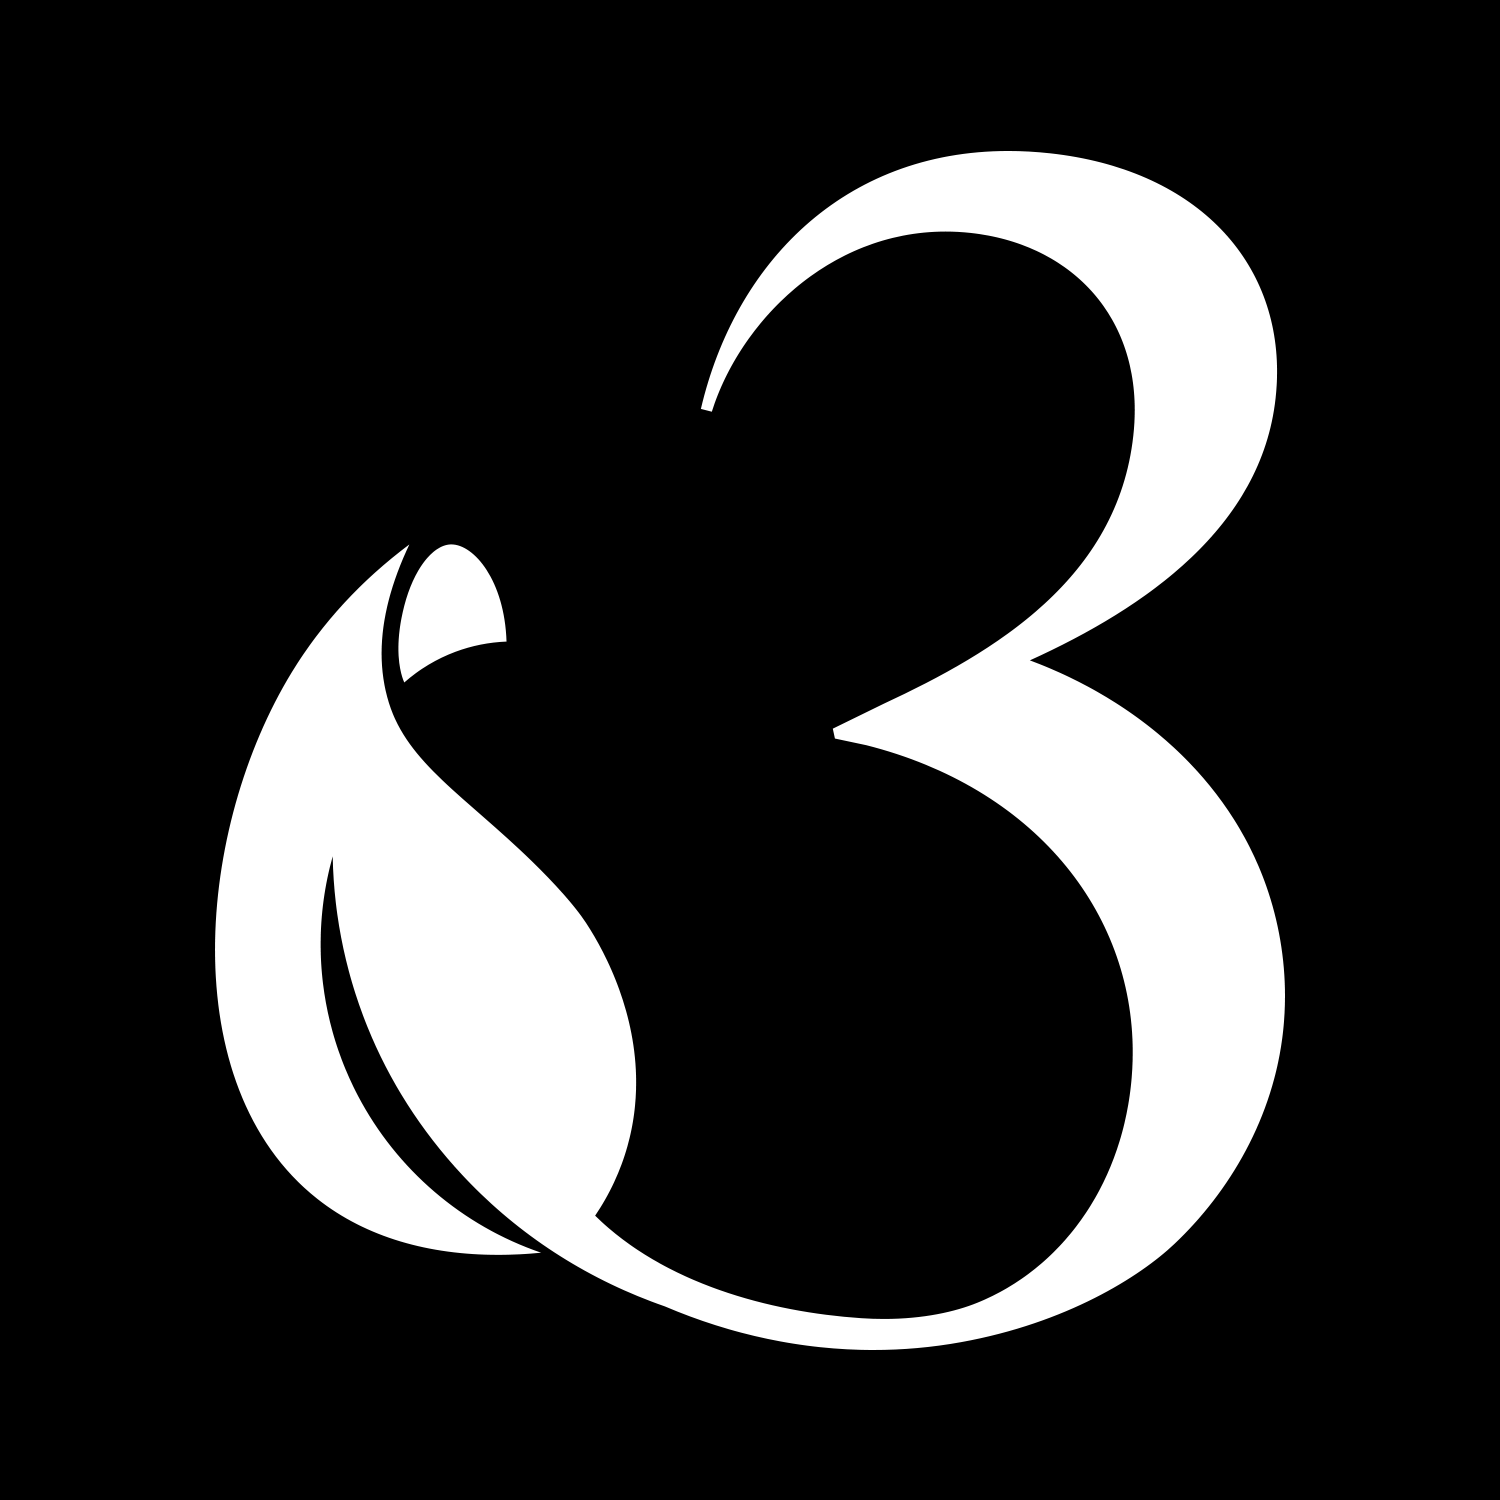 3oud Brand Mark in black & white